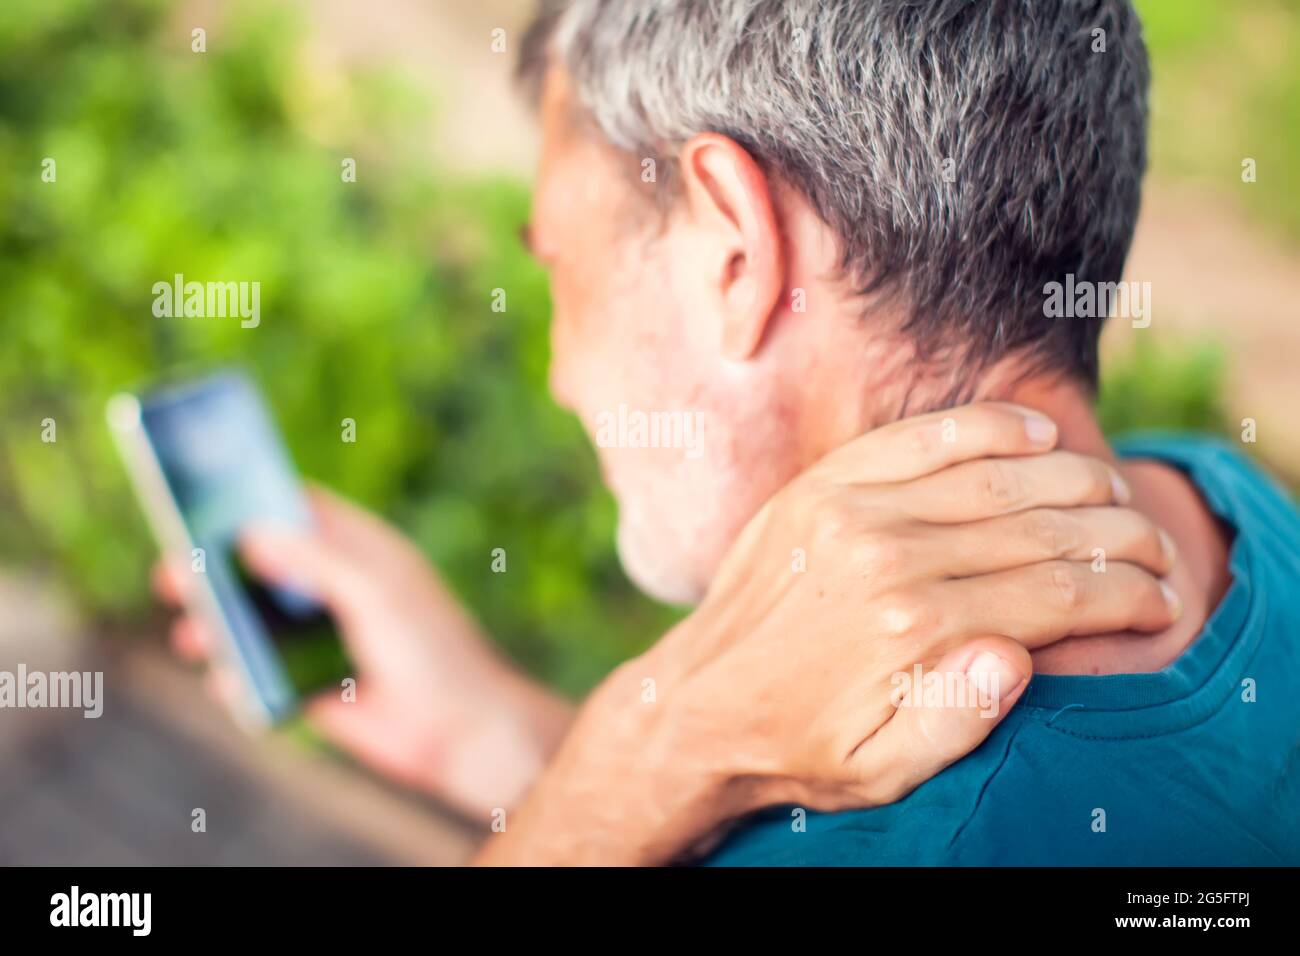 Dolor de cuello con el smartphone al aire libre. Concepto de salud, estilo de vida y tecnología Foto de stock